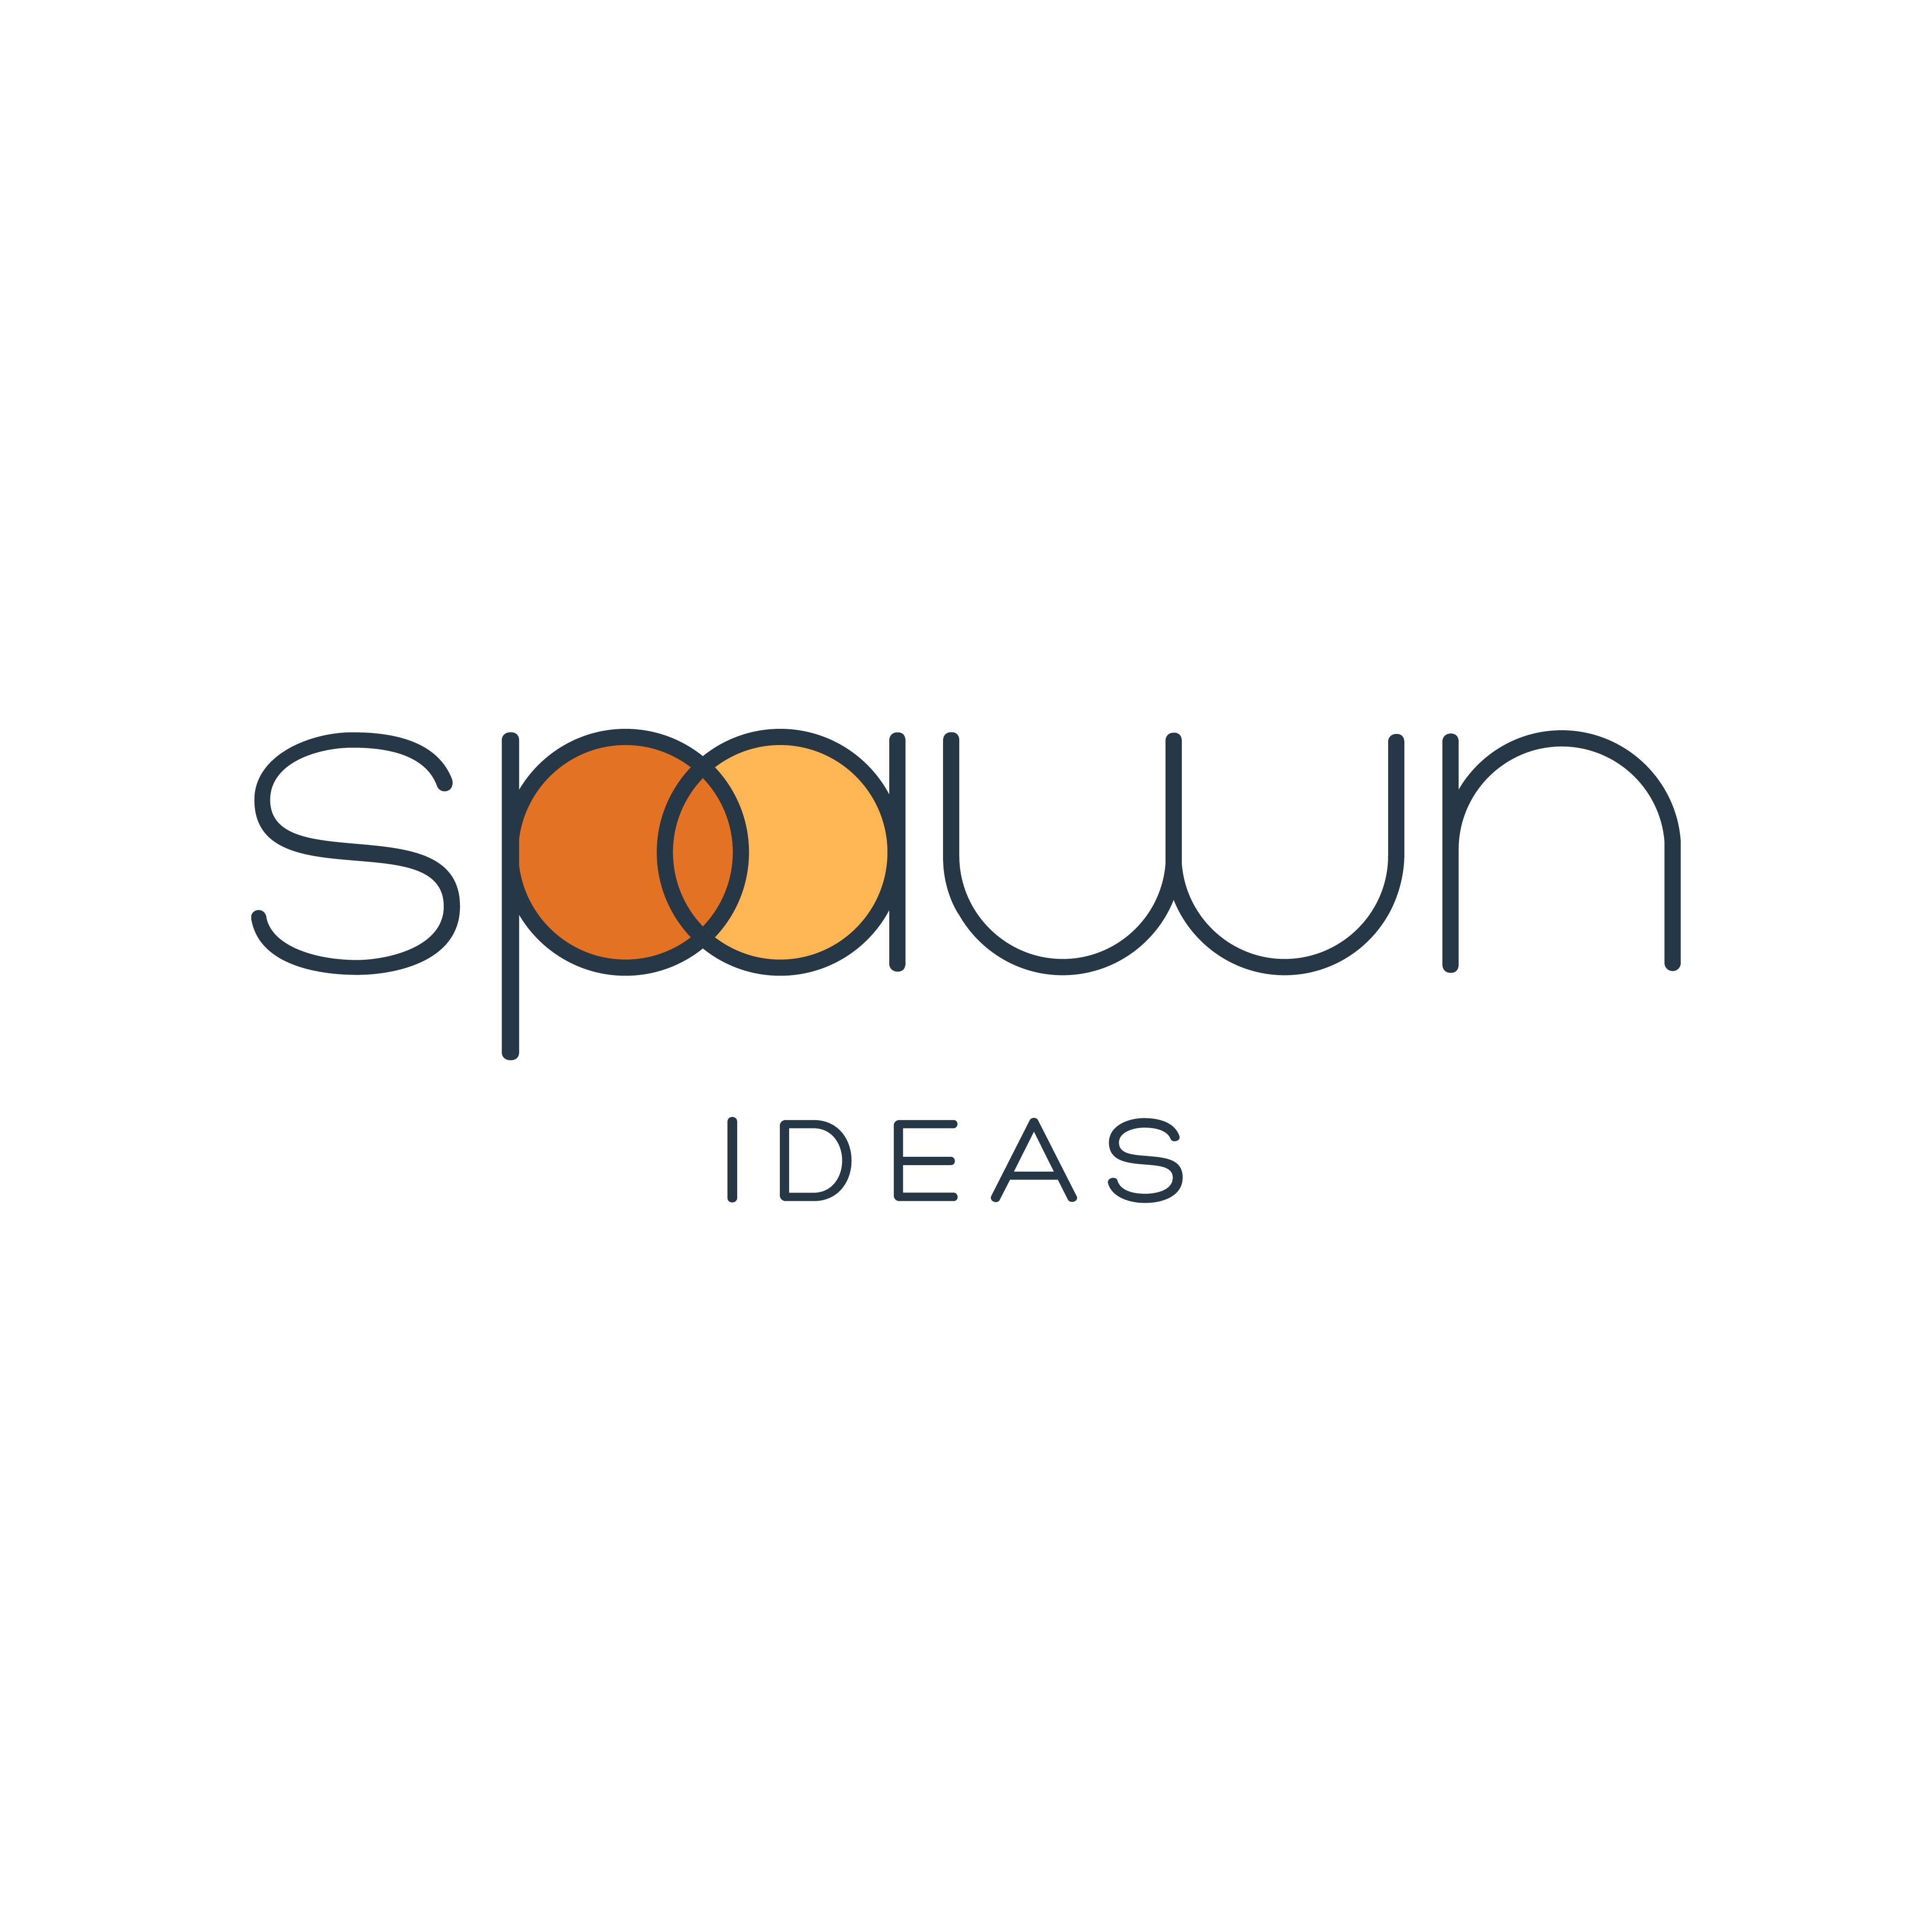 Spawn Ideas logo